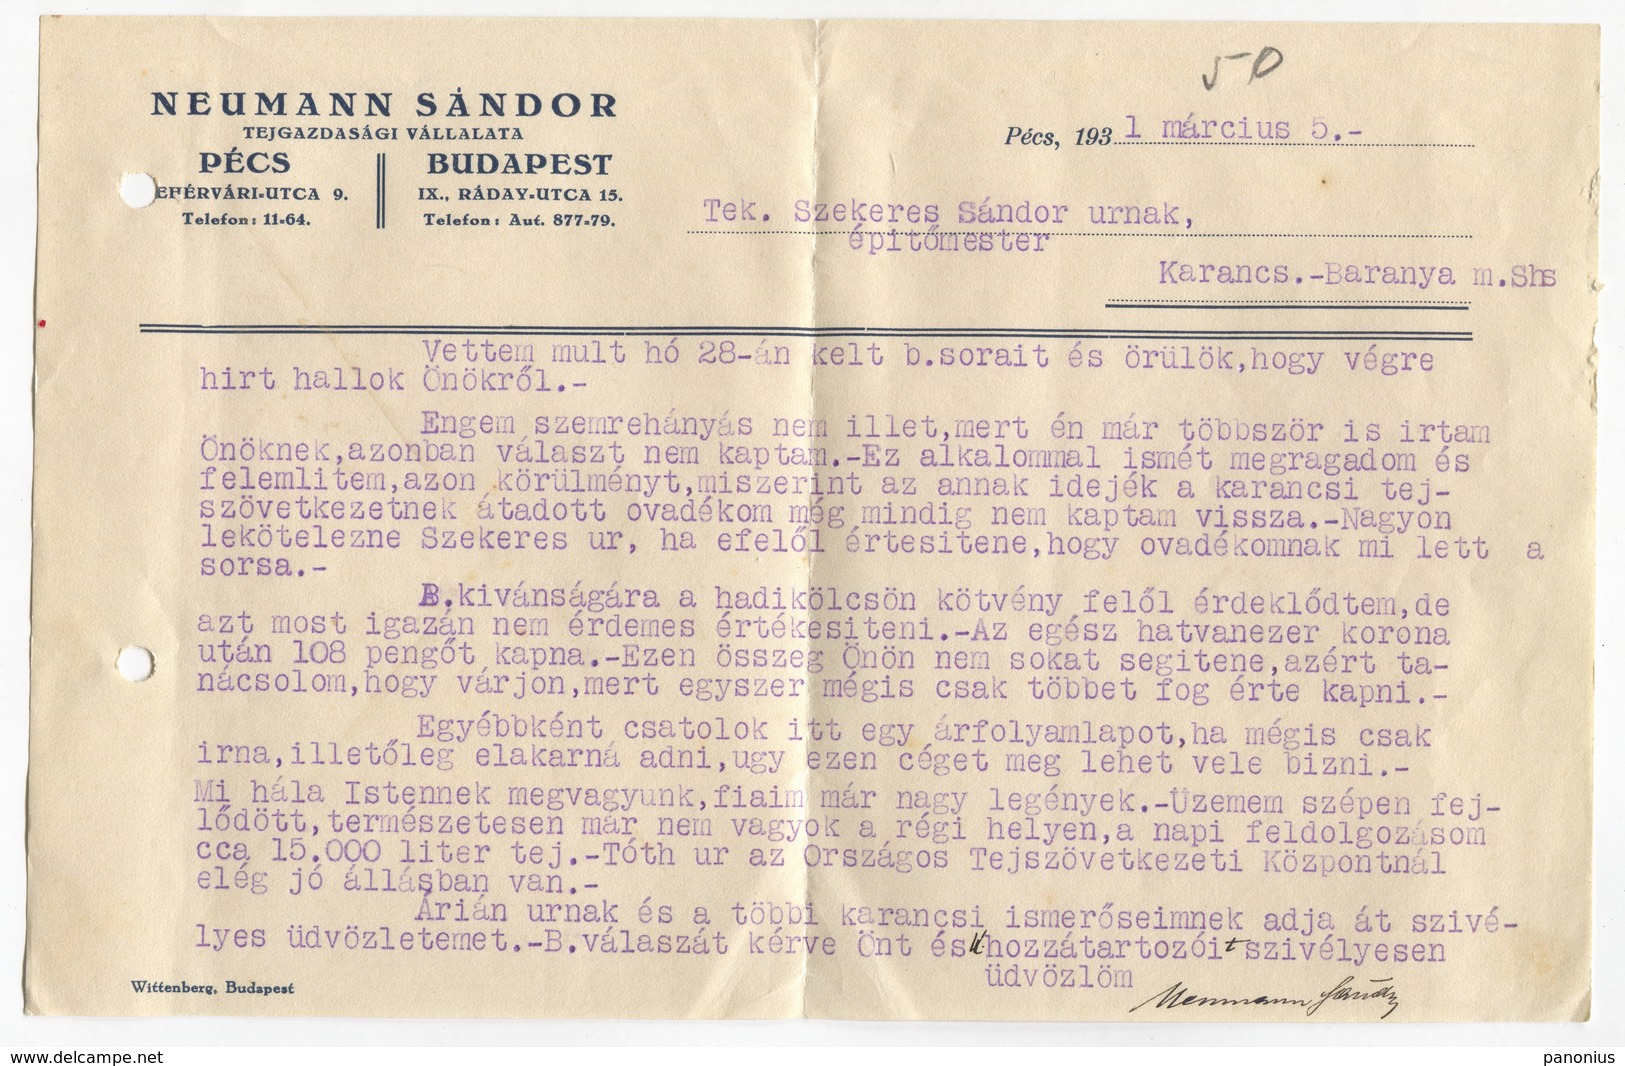 HUNGARY - OLD LETTER 1931. MEMORANDUM NEUMANN SANDOR, TRAVELED TO KARANCS SHS YUGOSLAVIA - Baranya